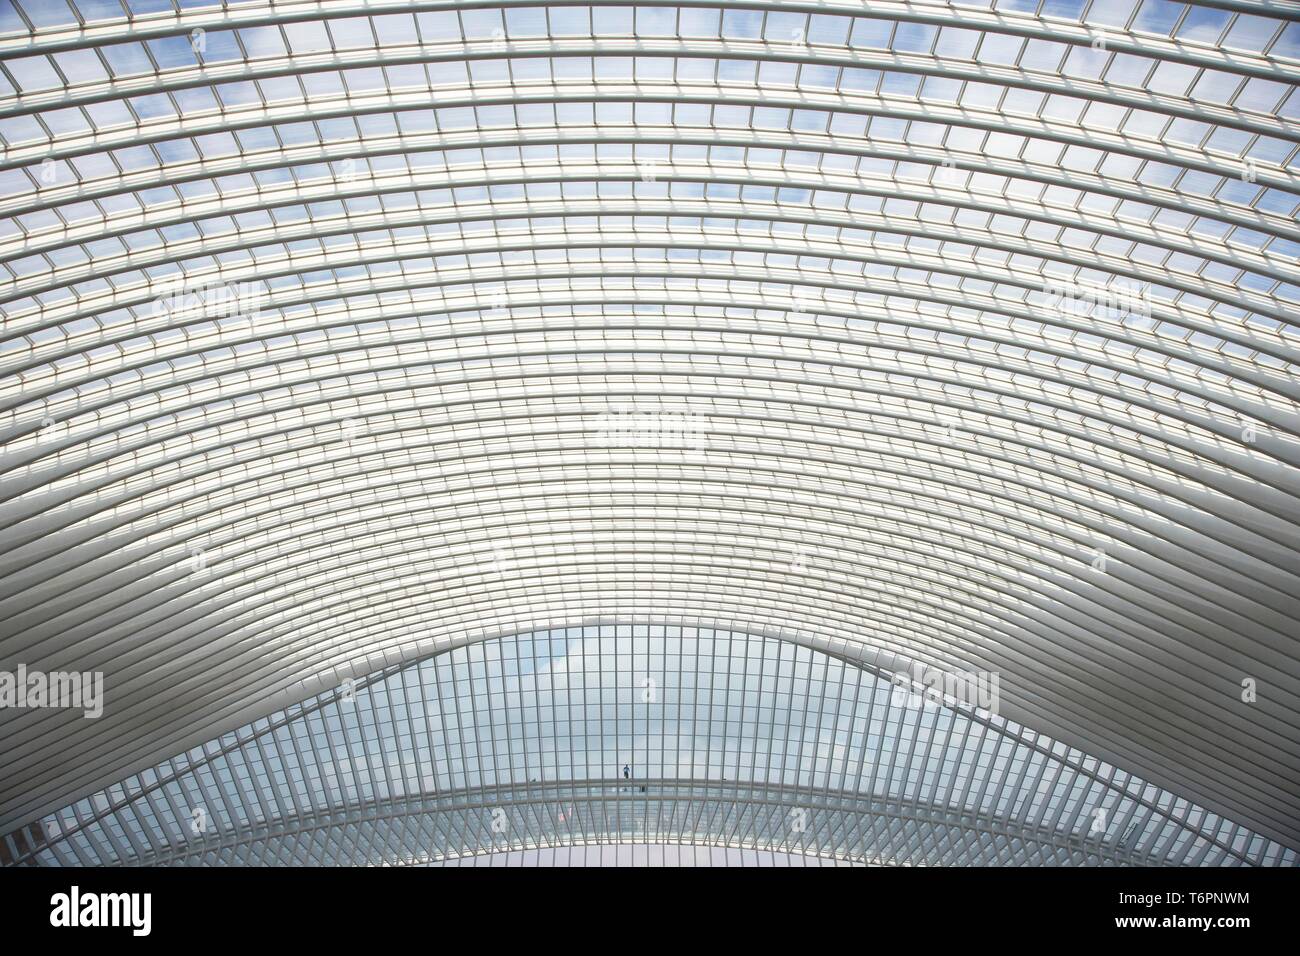 Gare de Liege-Guillemins Bahnhof von Architekt Santiago Calatrava in Lüttich, Belgien, Europa Stockfoto